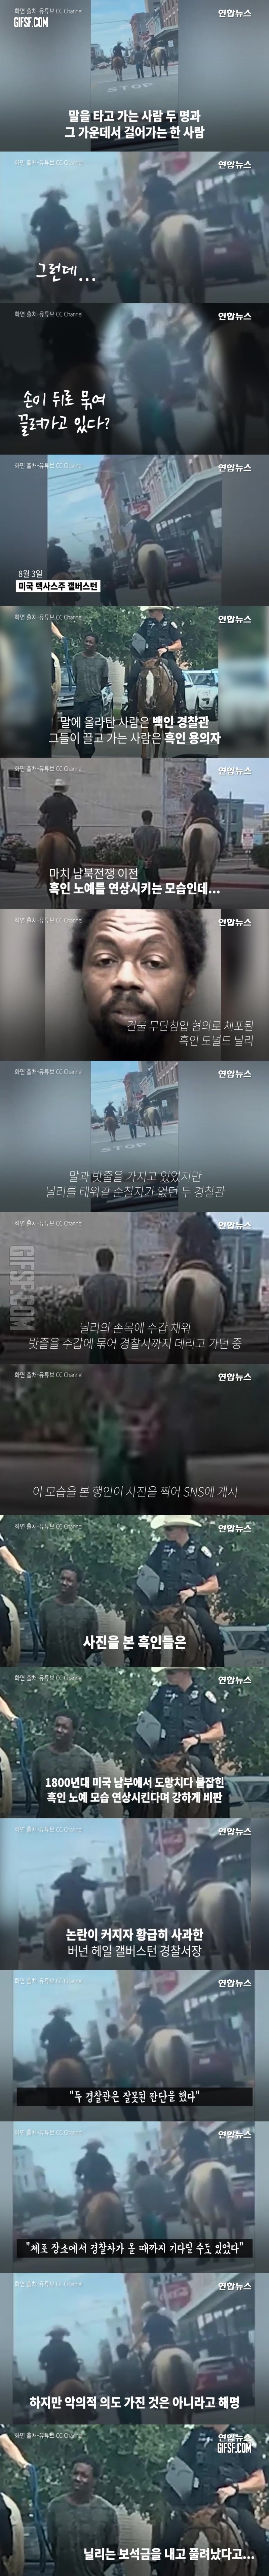 노예 연상',…말 탄 백인 경찰, 흑인 줄로 묶어 끌고가 ',충격', .jpg